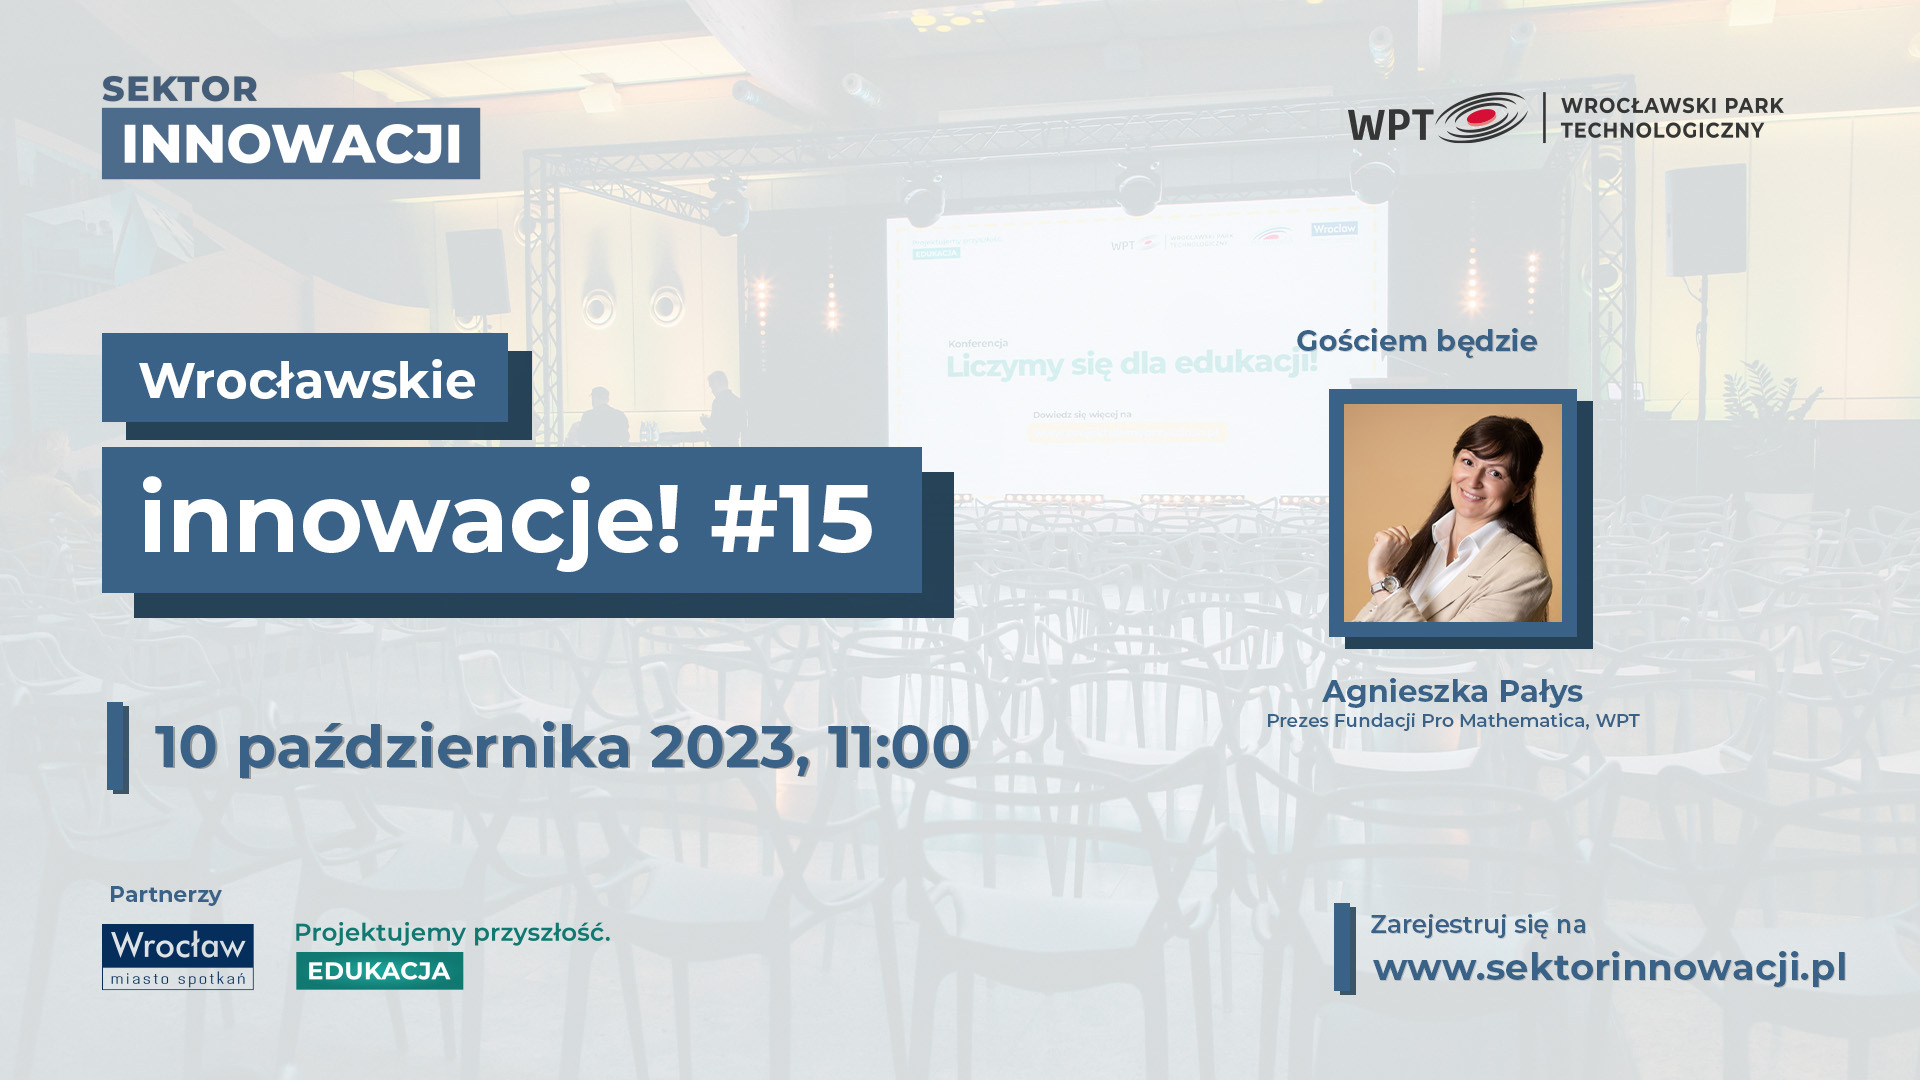 Wrocławskie innowacje #15: Projektujemy przyszłość. Edukacja